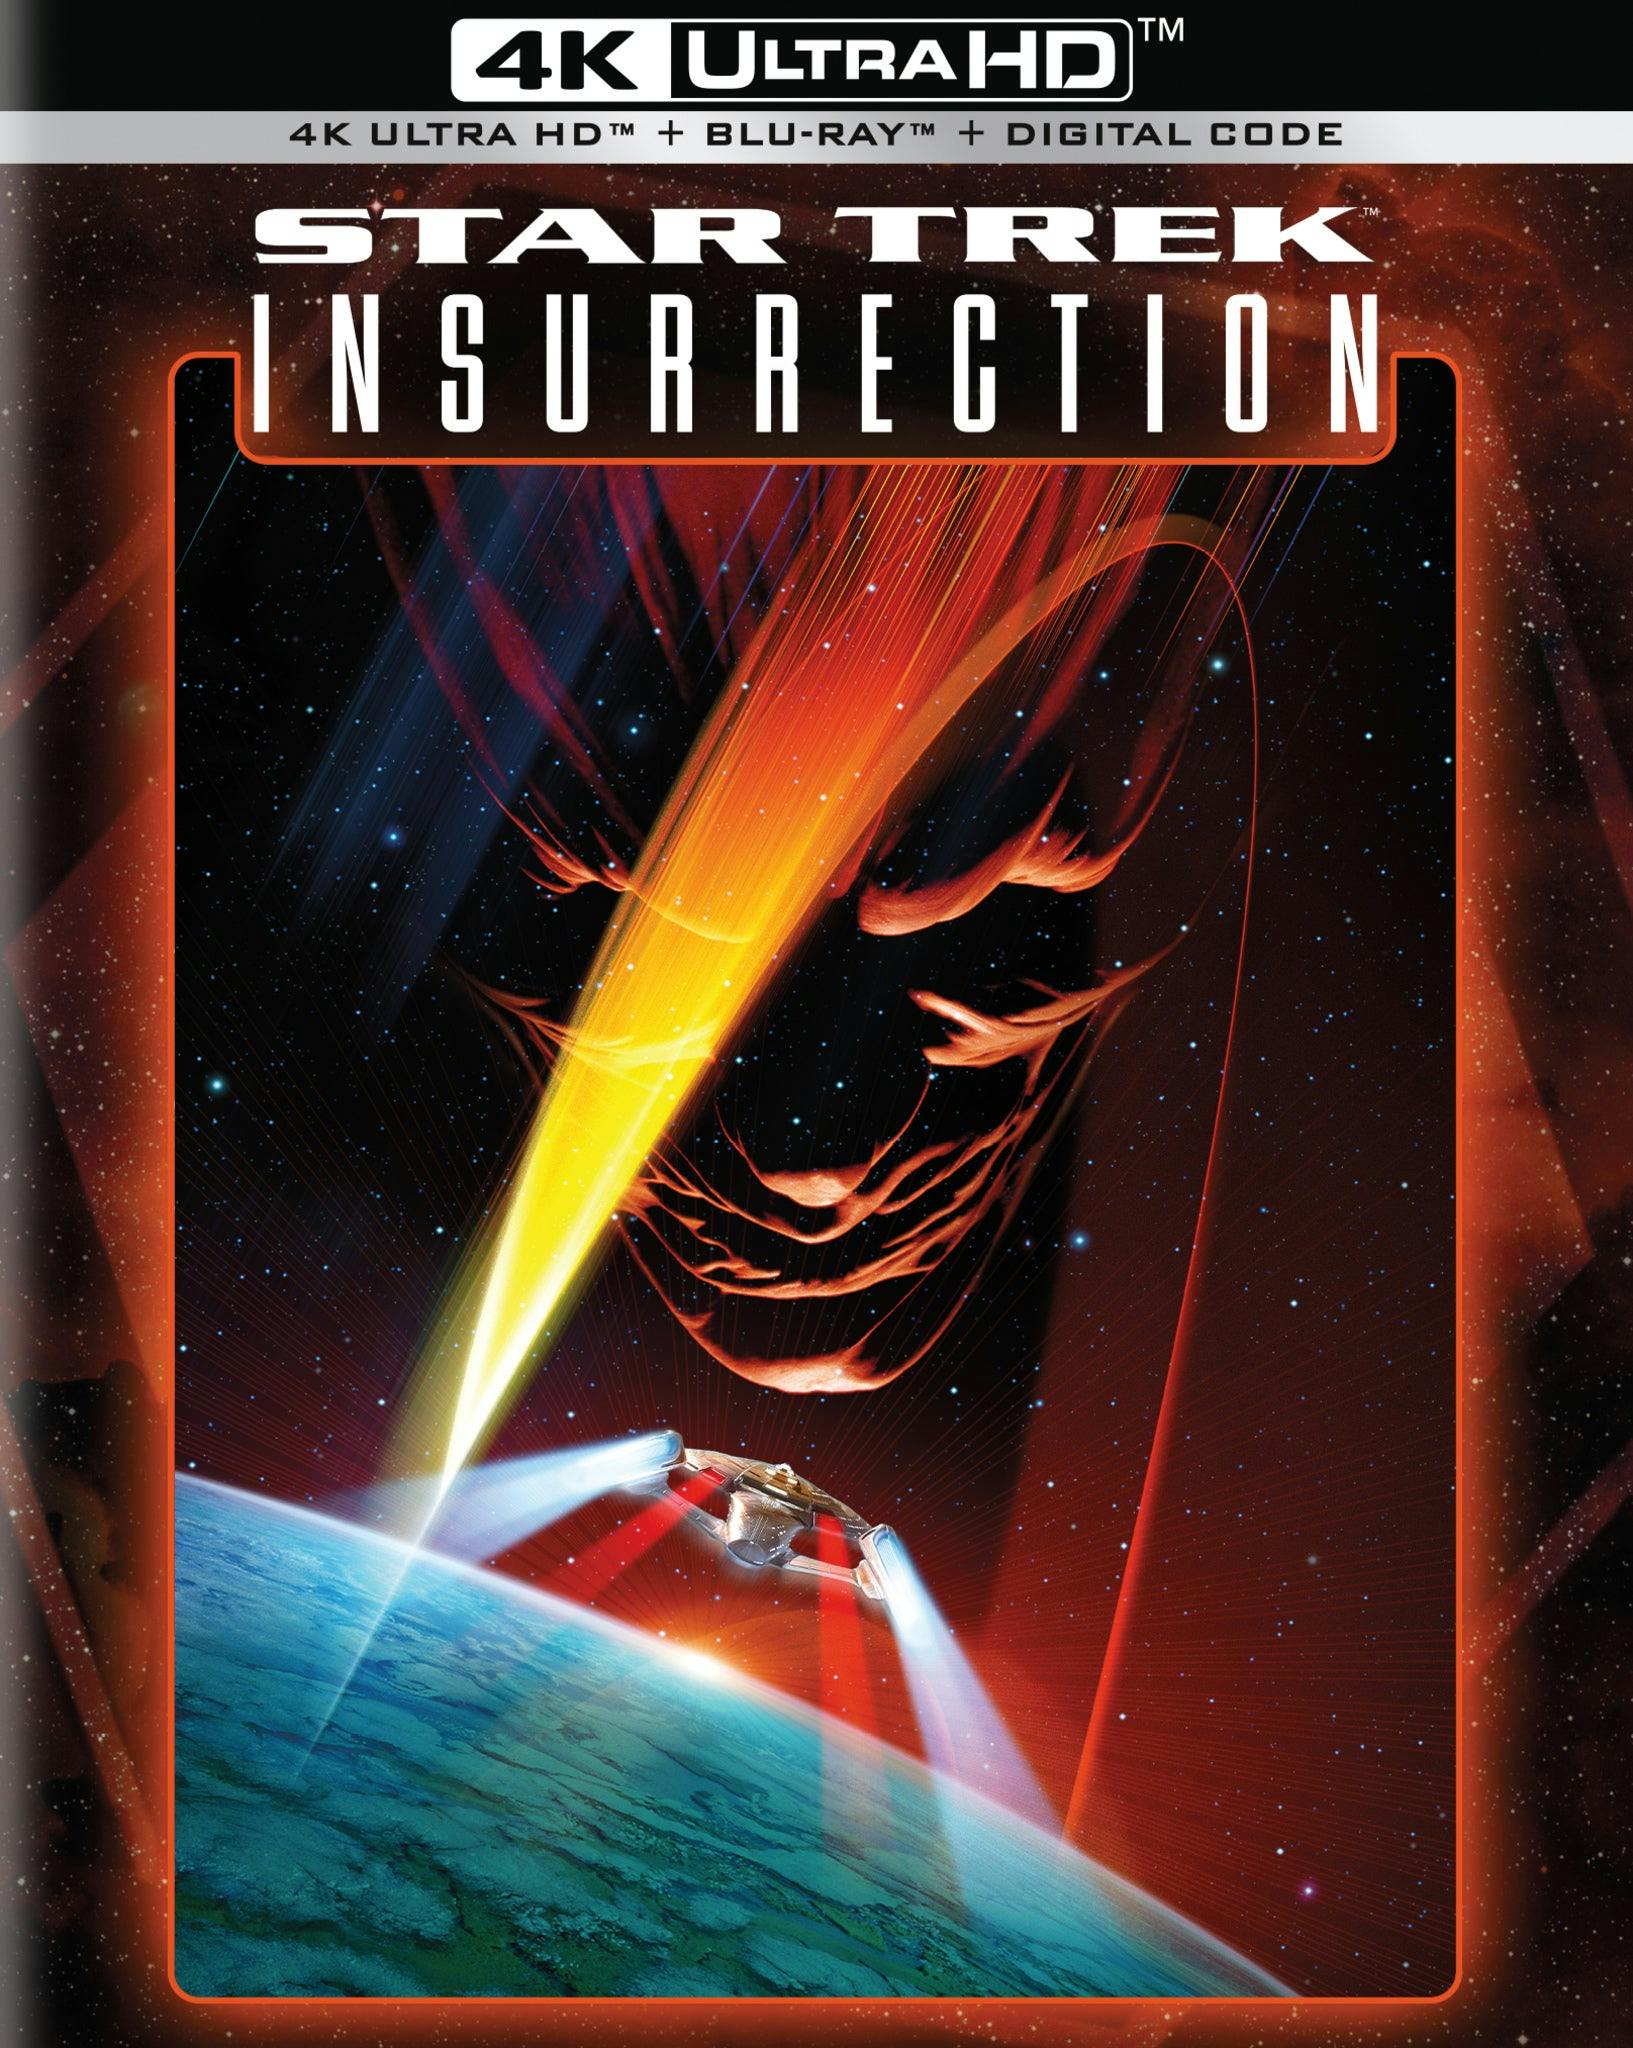 Star Trek: Insurrection 4K Ultra HD packshot